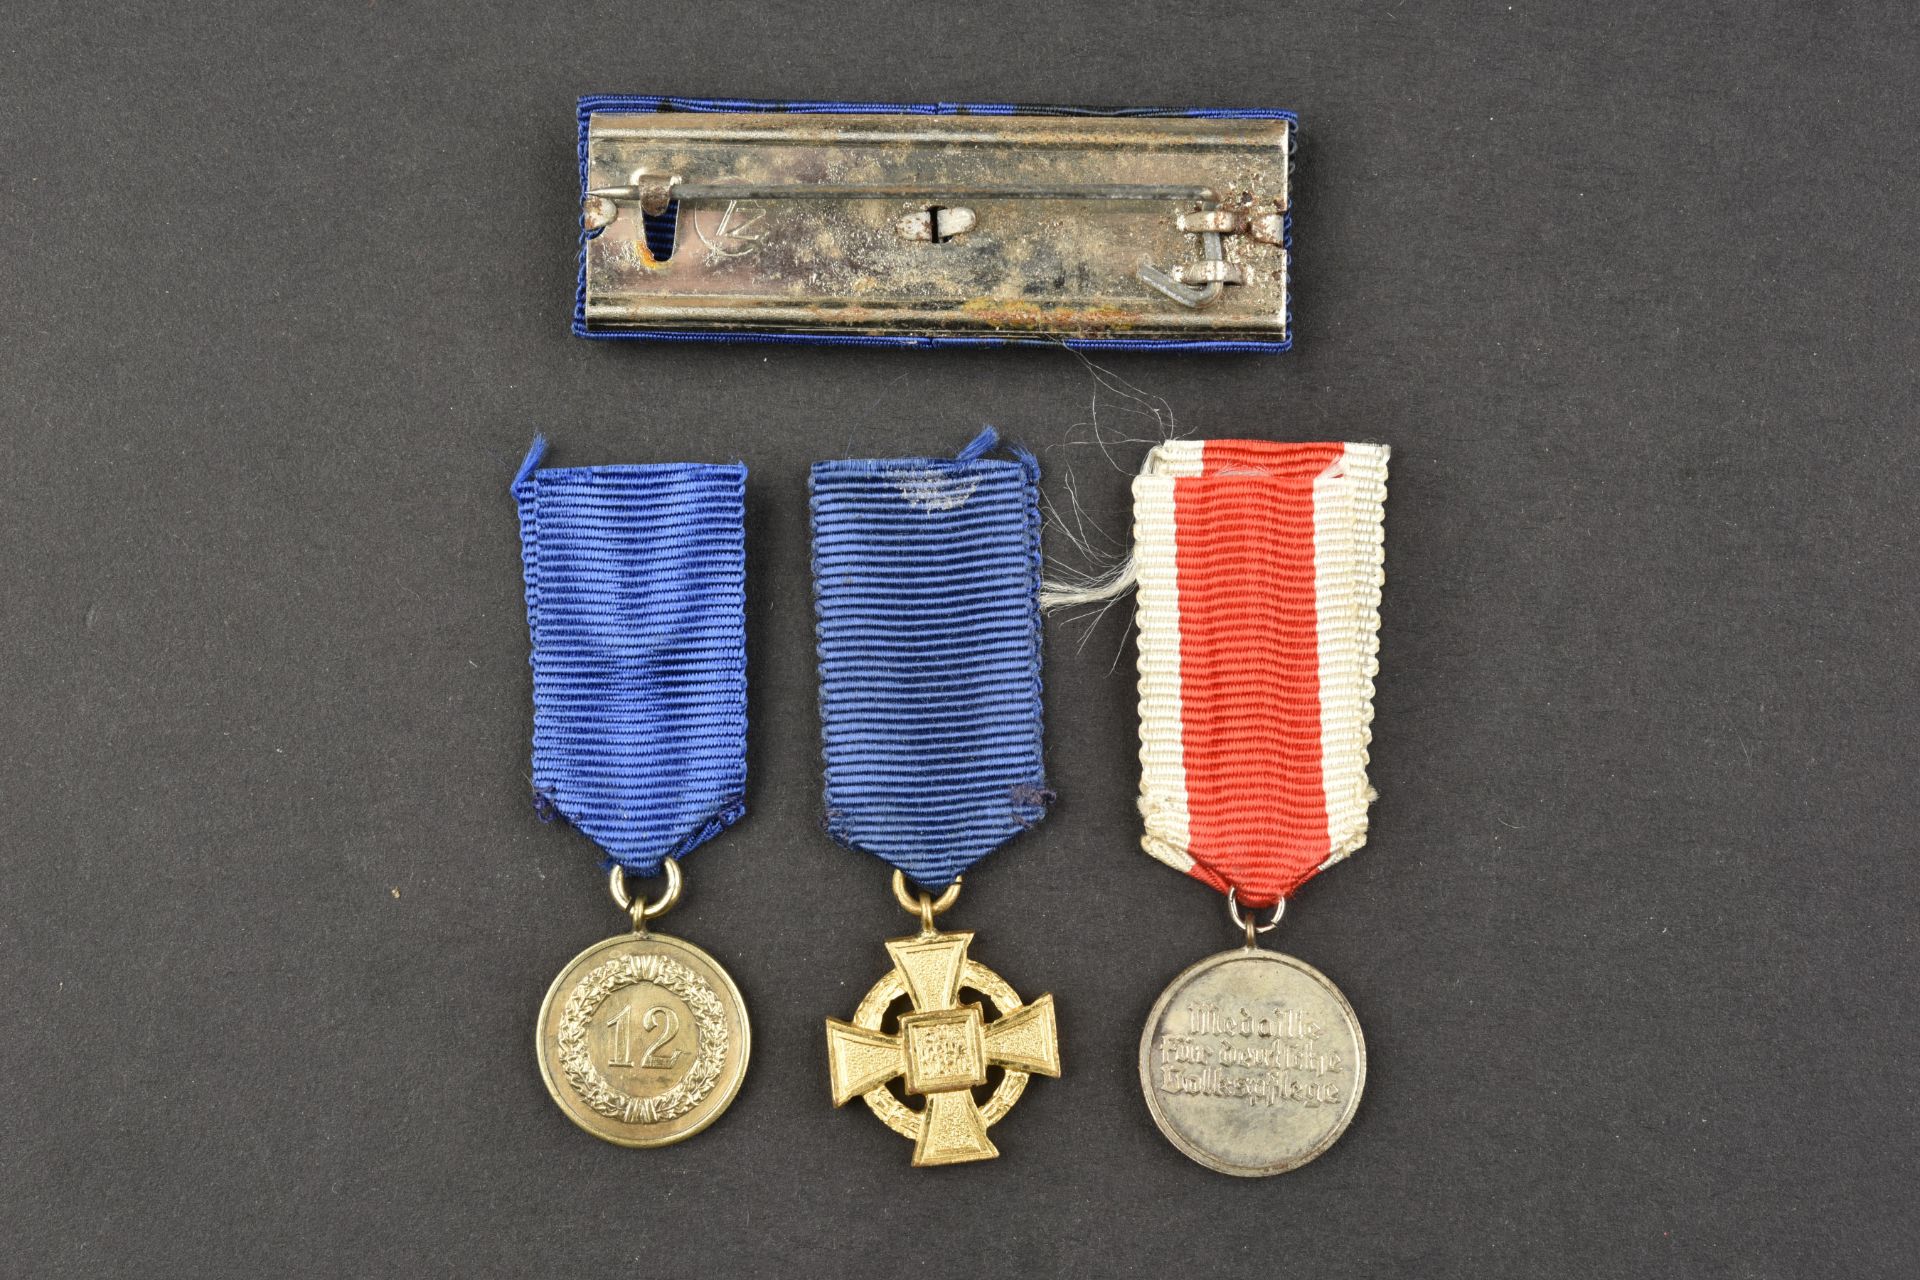 Decoration allemande. German medals. - Image 2 of 2